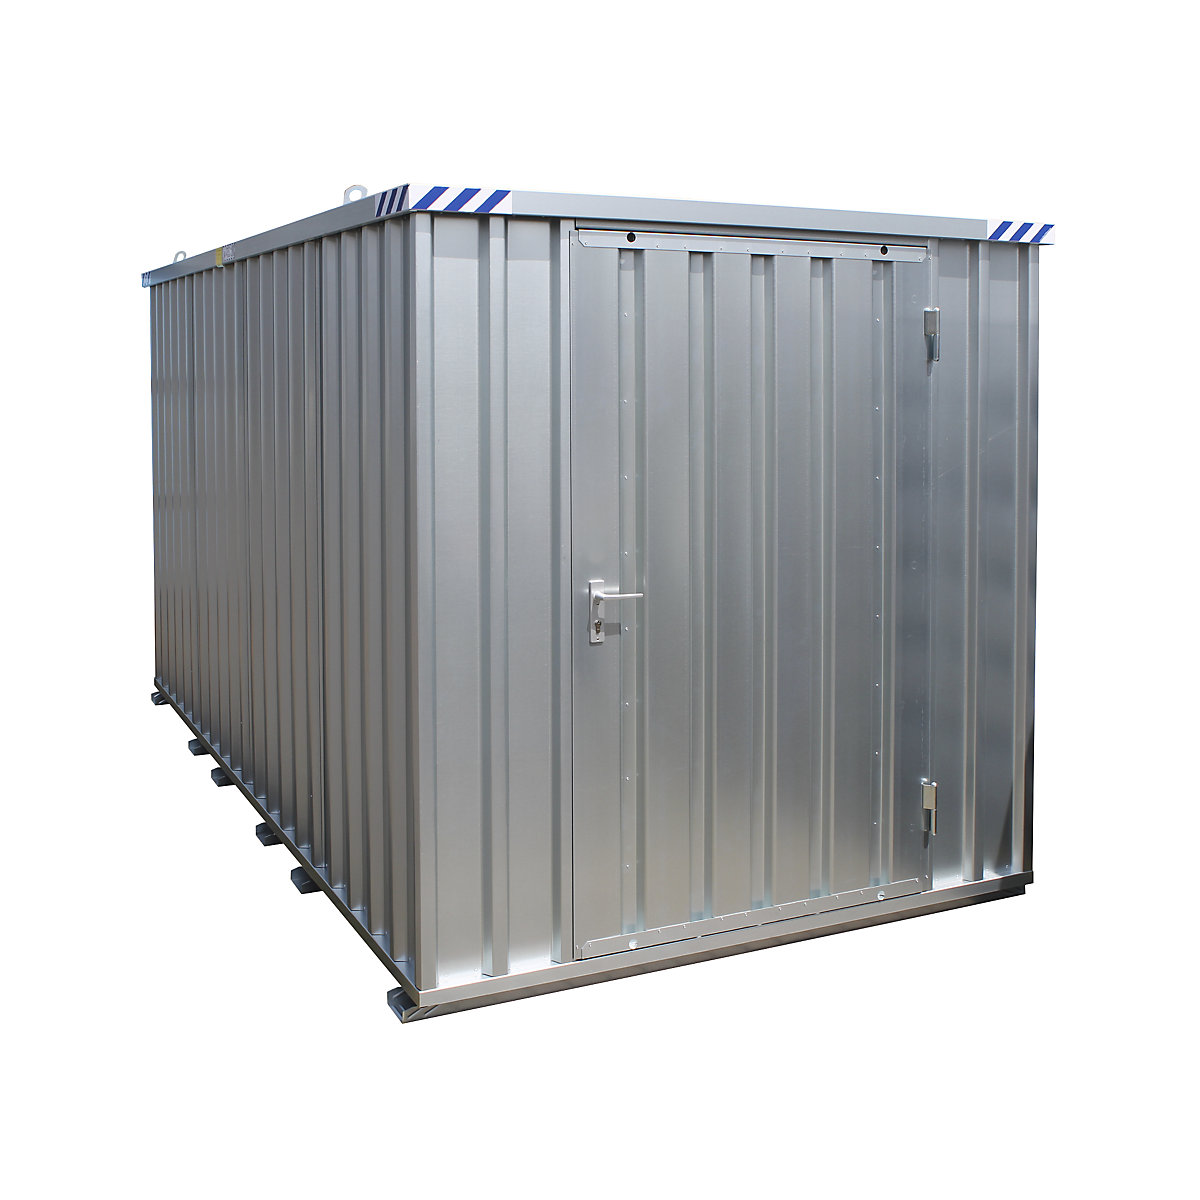 Snelbouw container, verzinkt, ongemonteerd, met houten vloer, uitwendige b x d x h = 2100 x 1100 x 2100 mm